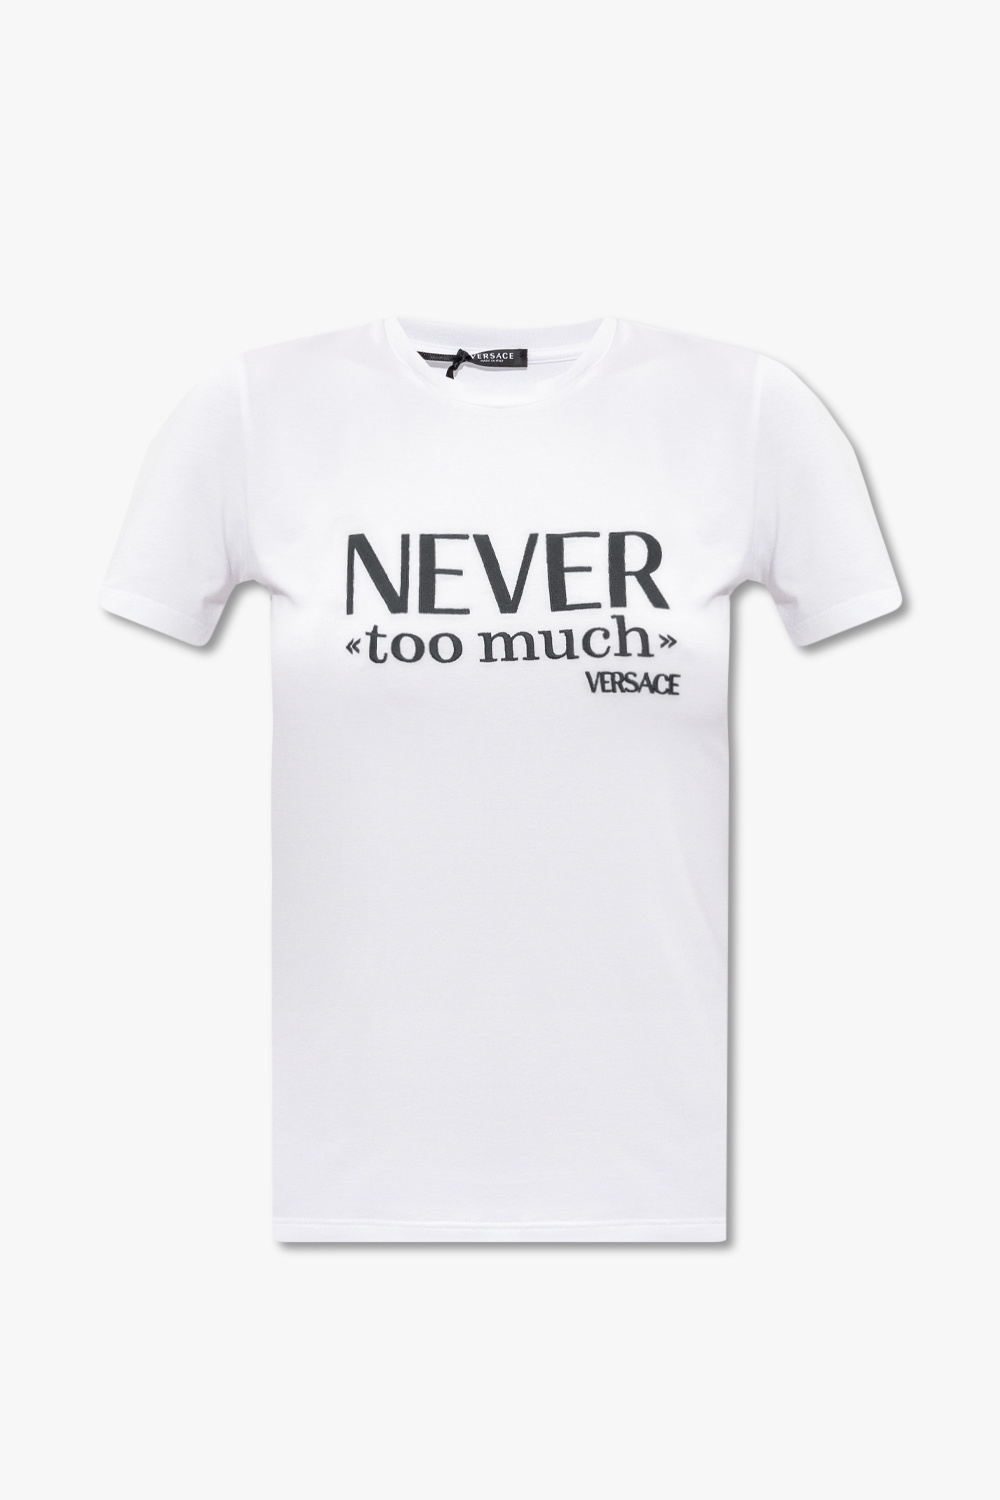 Versace DKNY Kortärmad t-shirt i kort modell med kapad logga